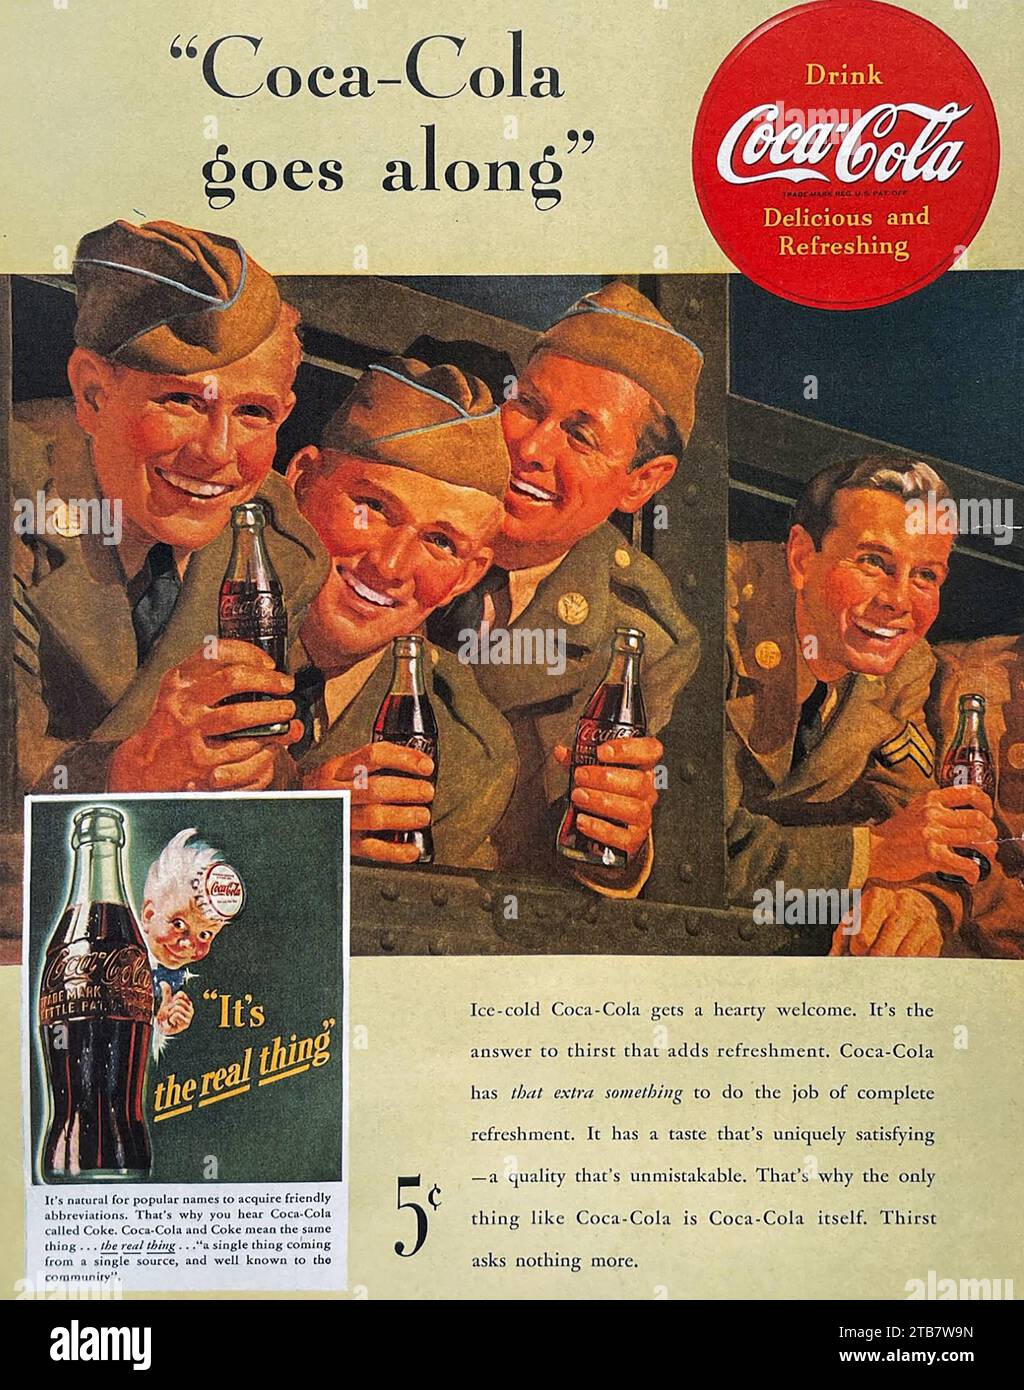 COCA-COLA advert 1942 Stock Photo